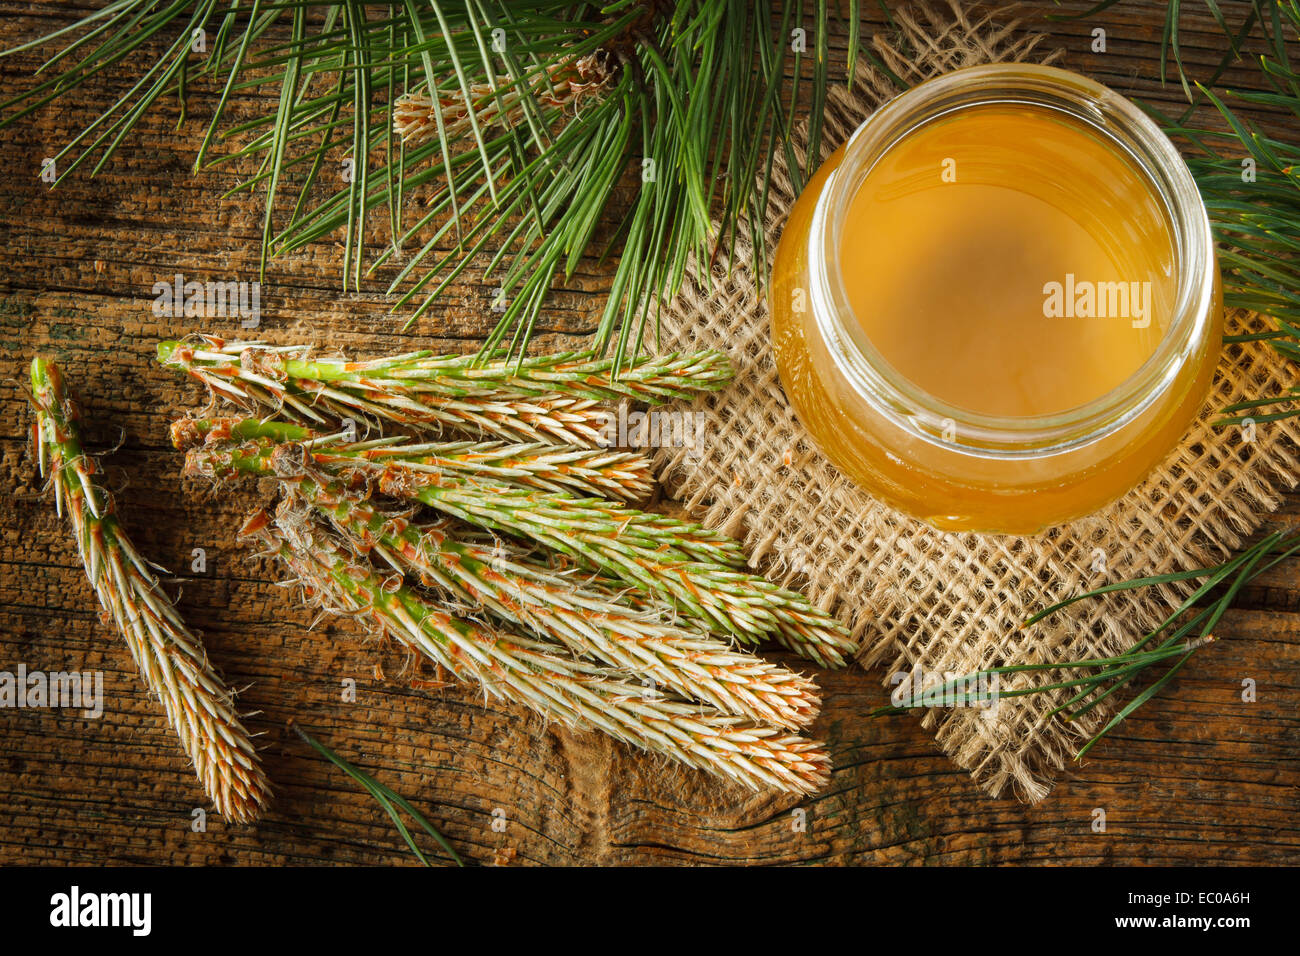 Jarabe casero hecho de verde pino joven las yemas y el azúcar Foto de stock